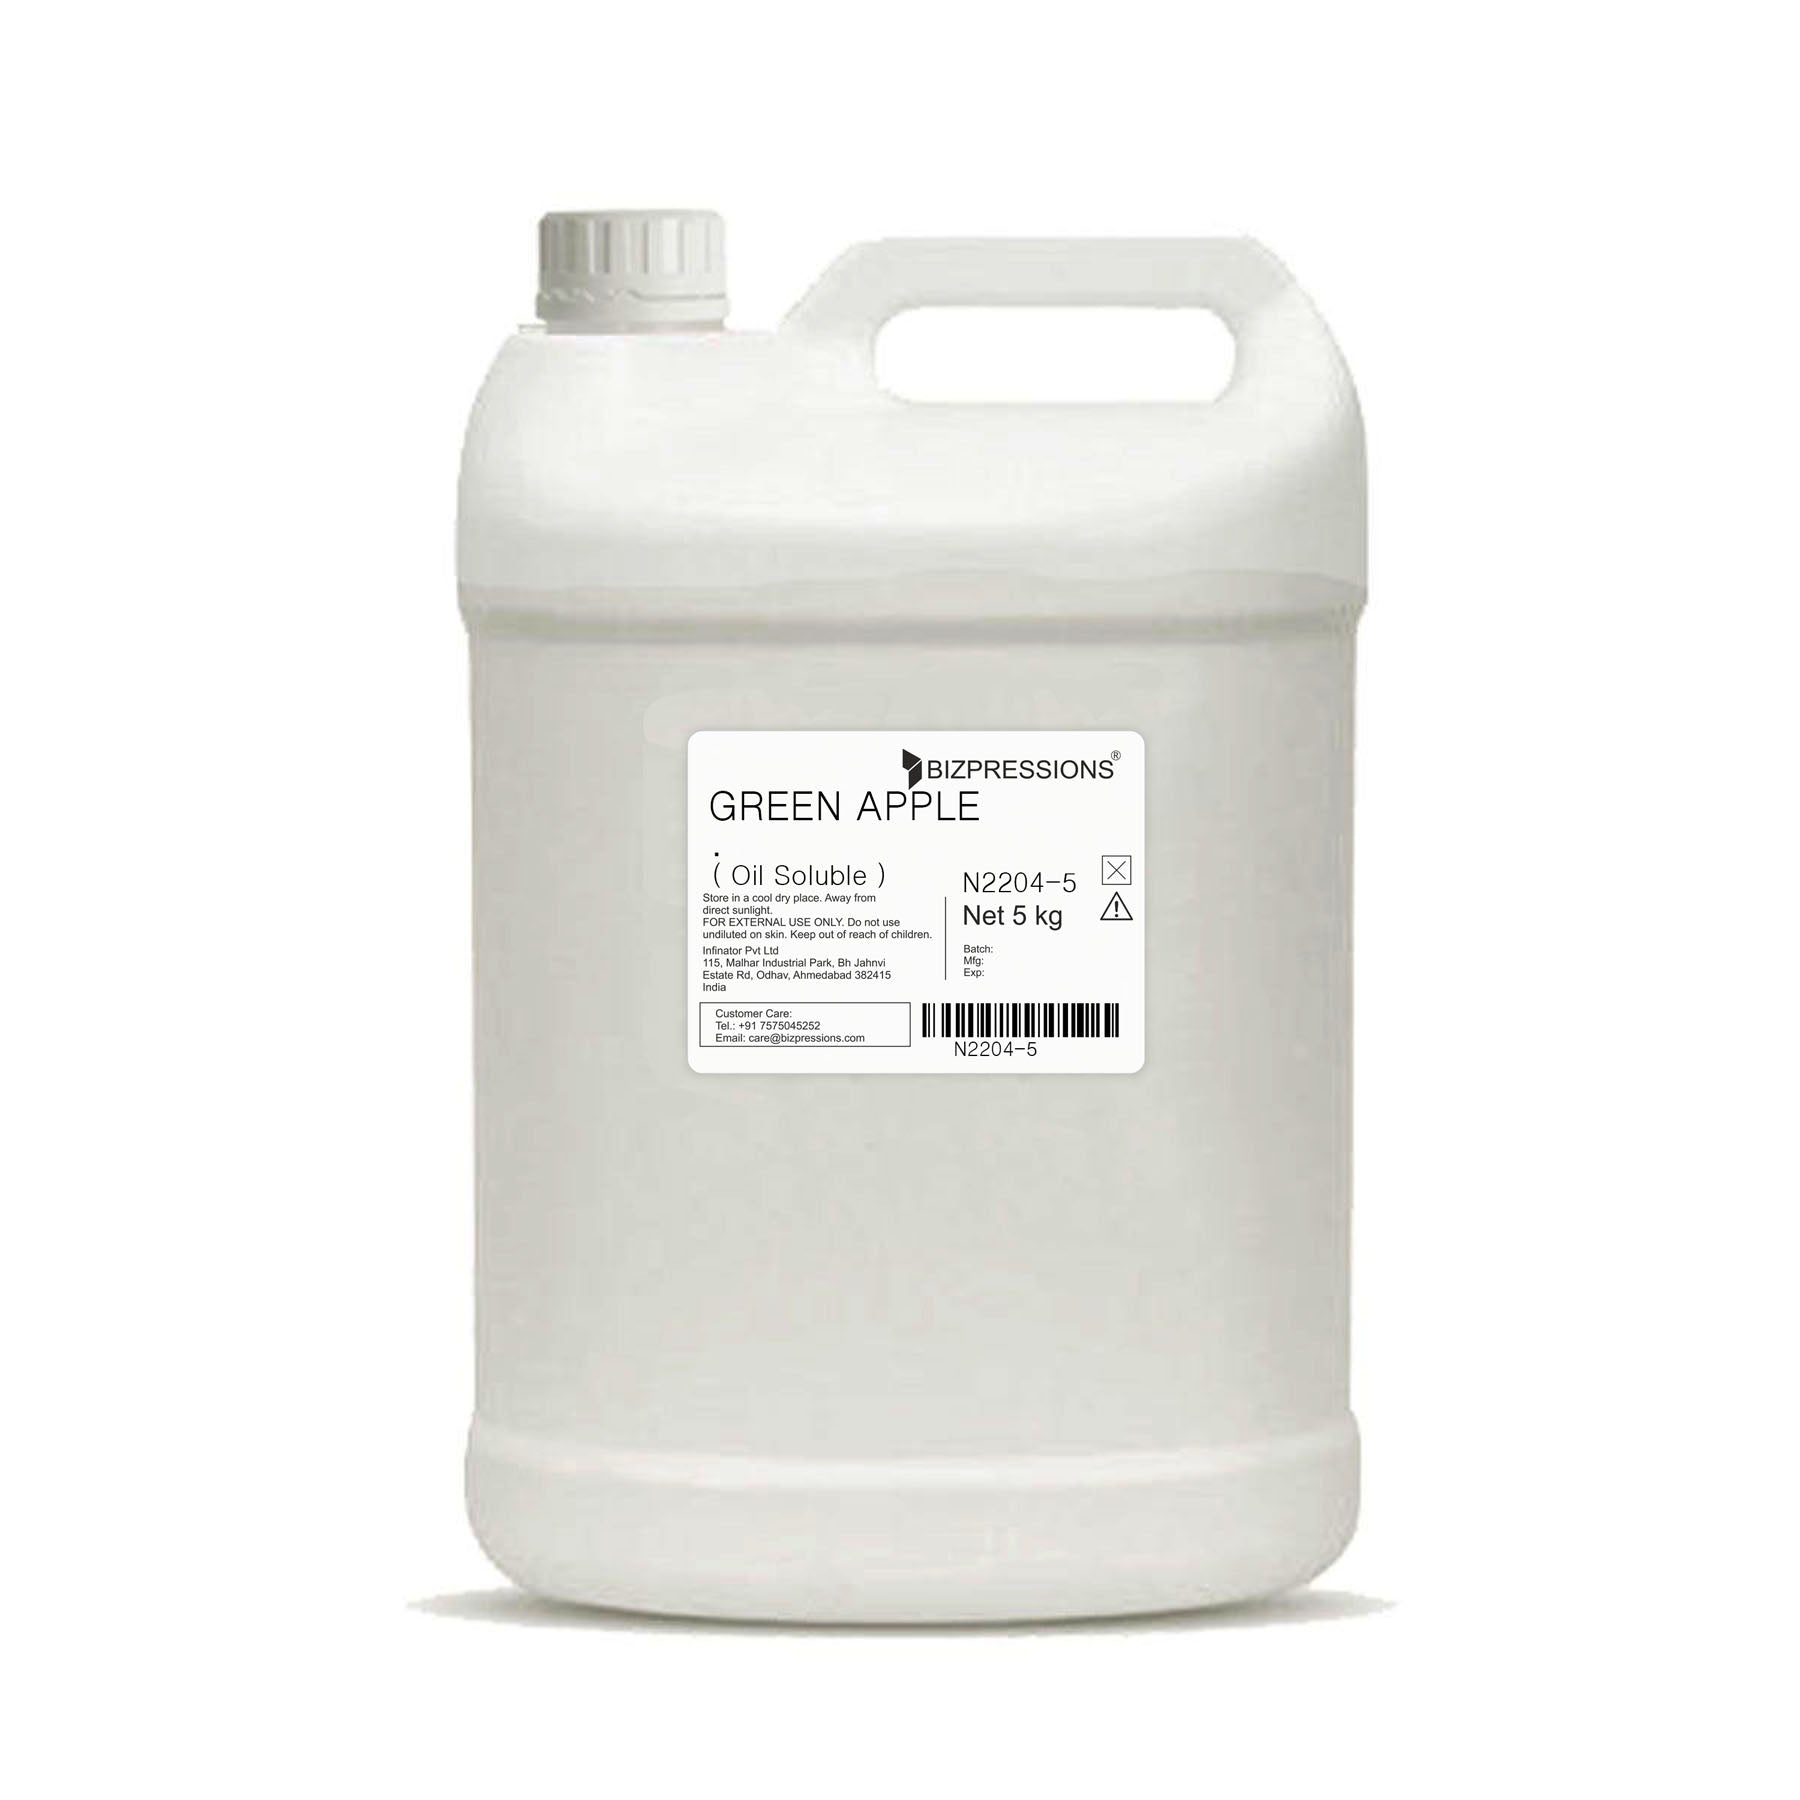 GREEN APPLE - Fragrance ( Oil Soluble ) - 5 kg